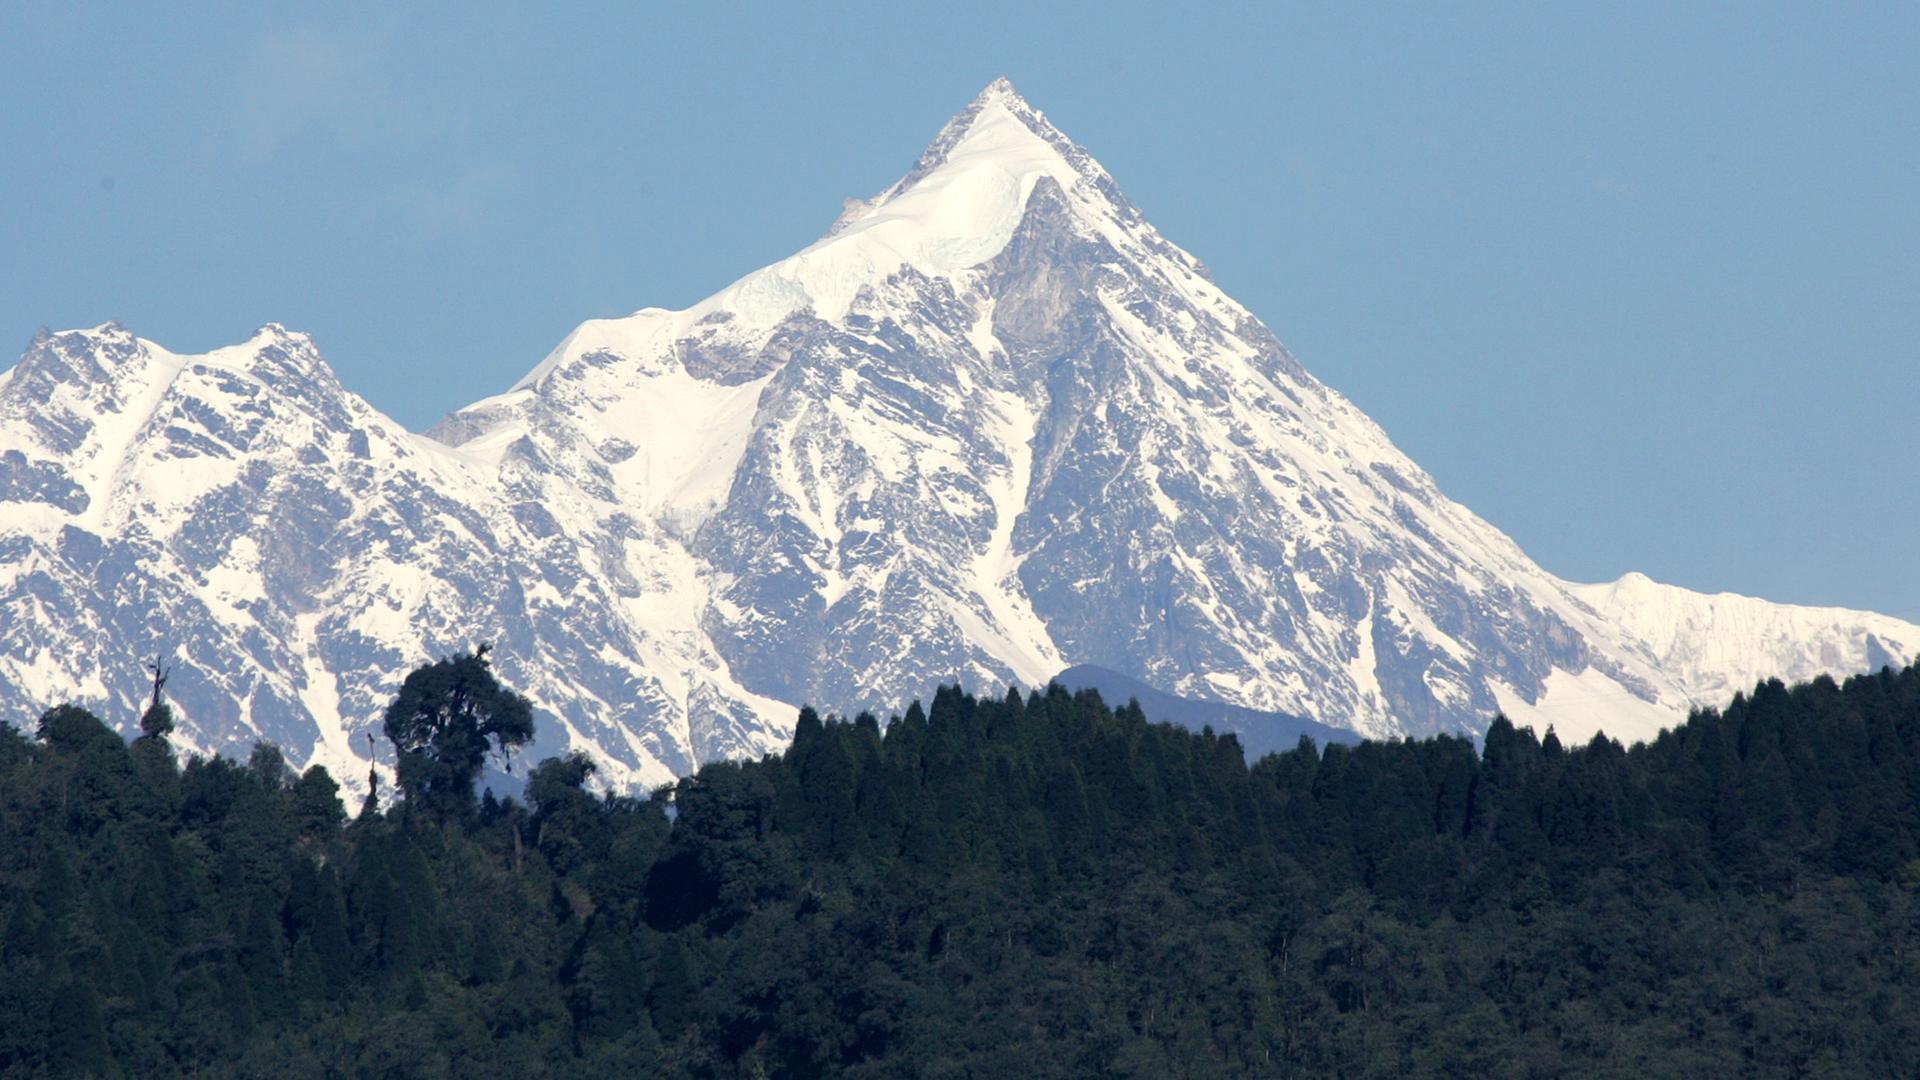 Der schneebedeckte Gipfel des Kanchenjunga vor wolkenlosem Himmel